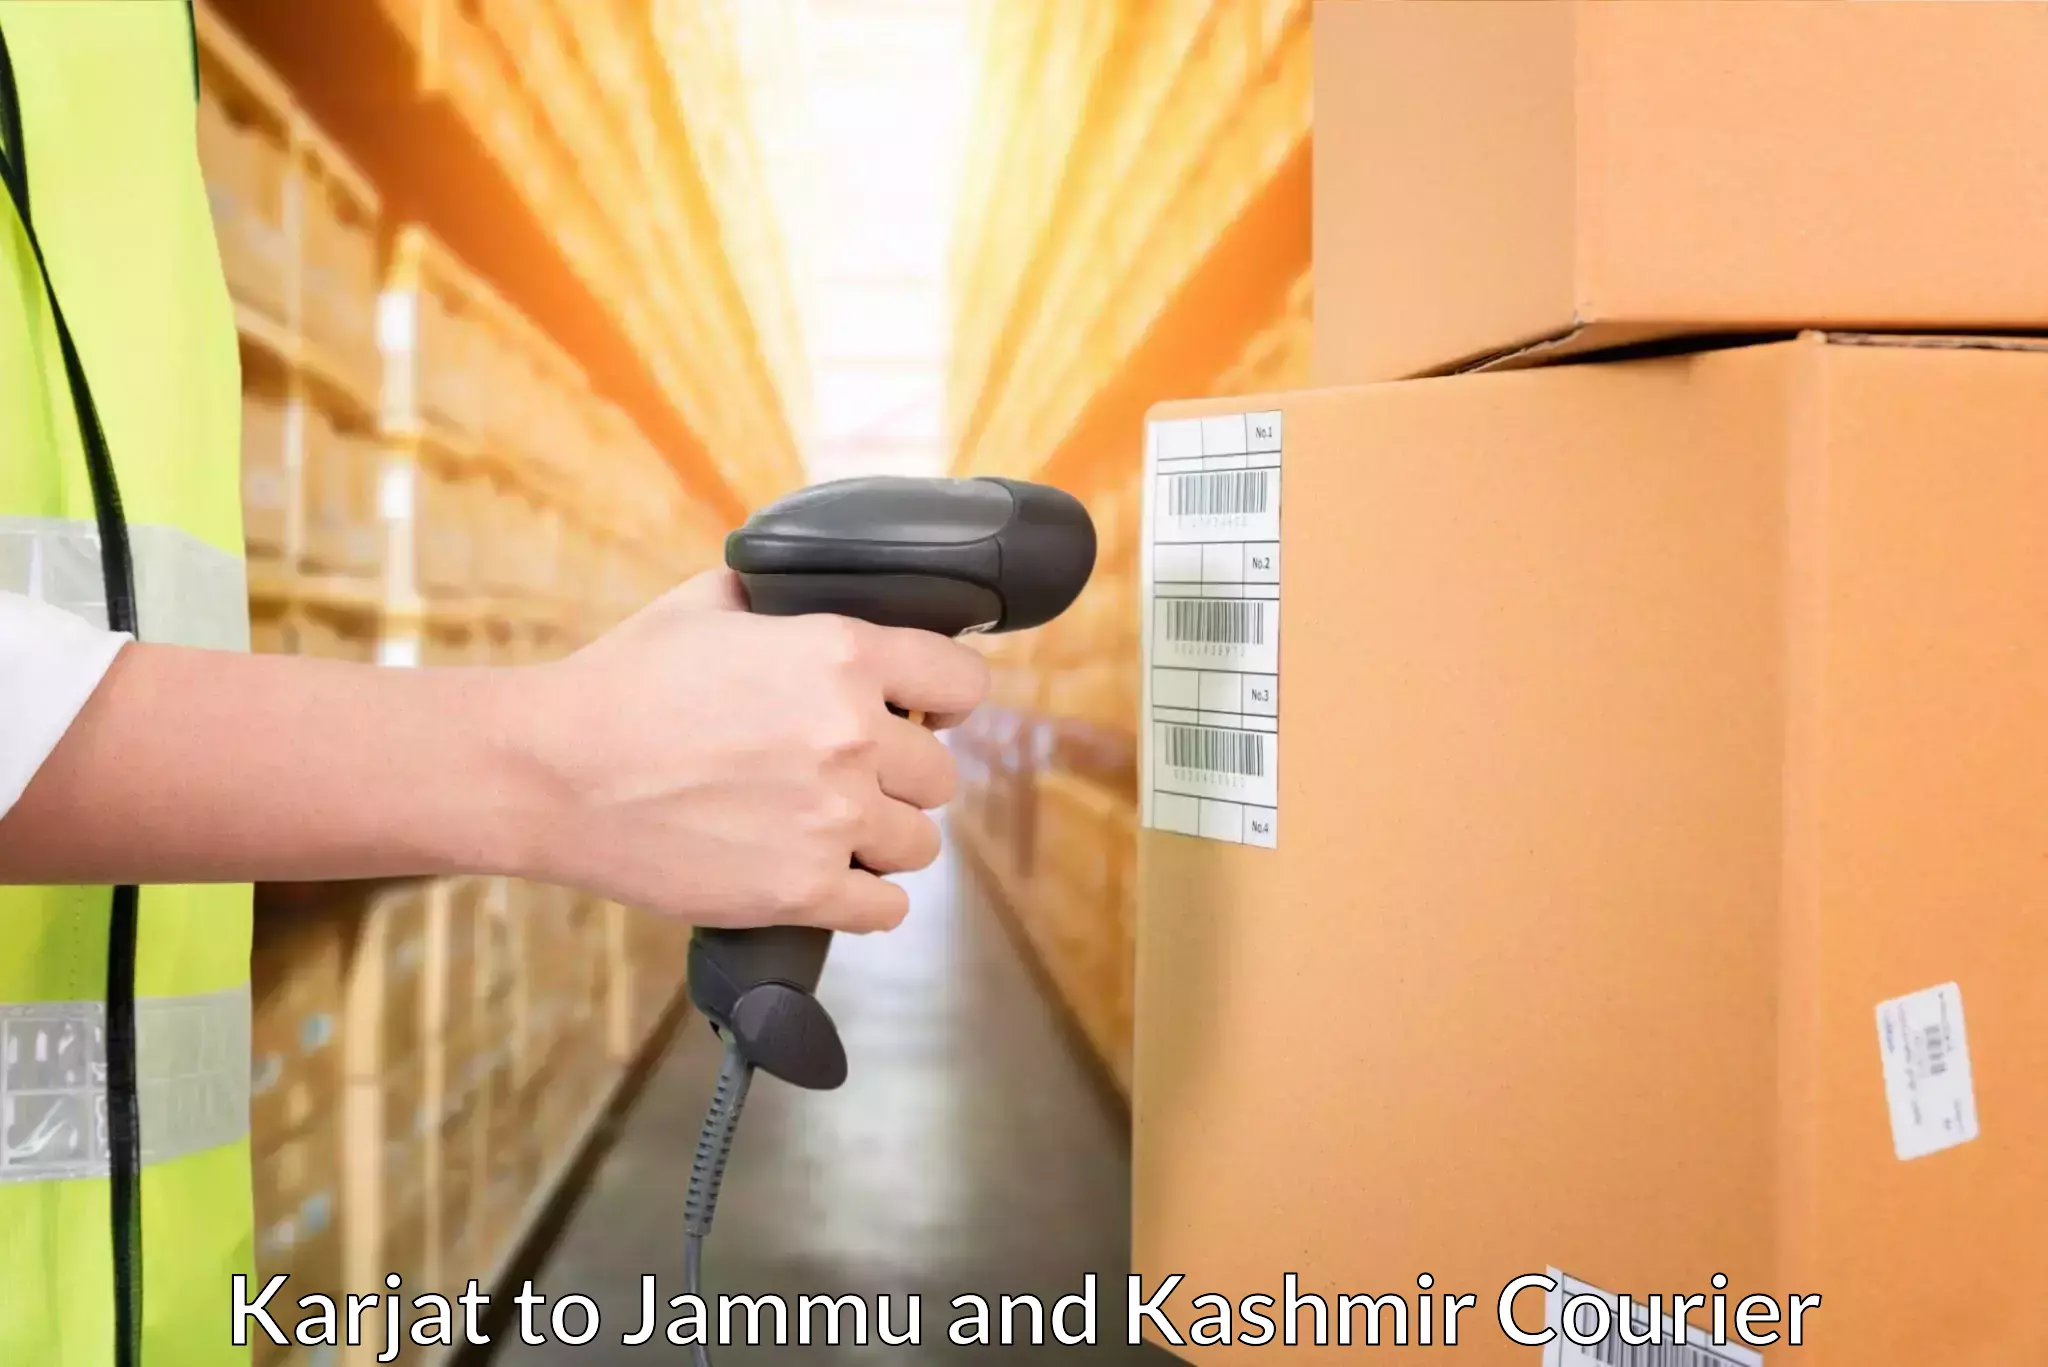 Efficient parcel delivery Karjat to Jammu and Kashmir